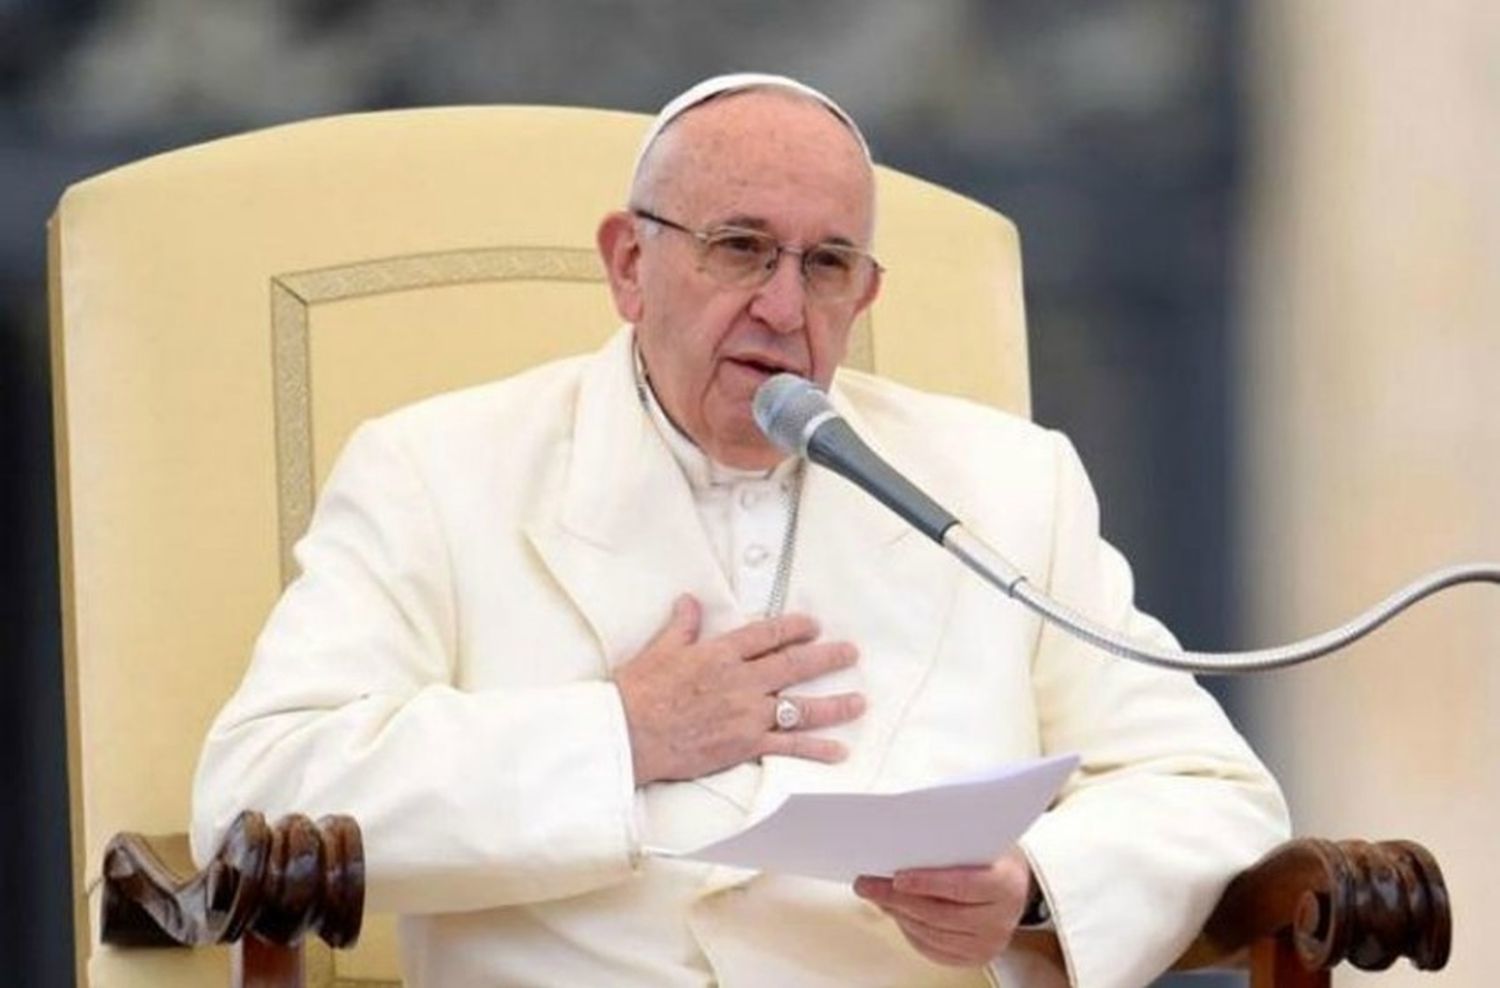 El Papa pidió por una "mirada materna” ante un mundo "desunido"